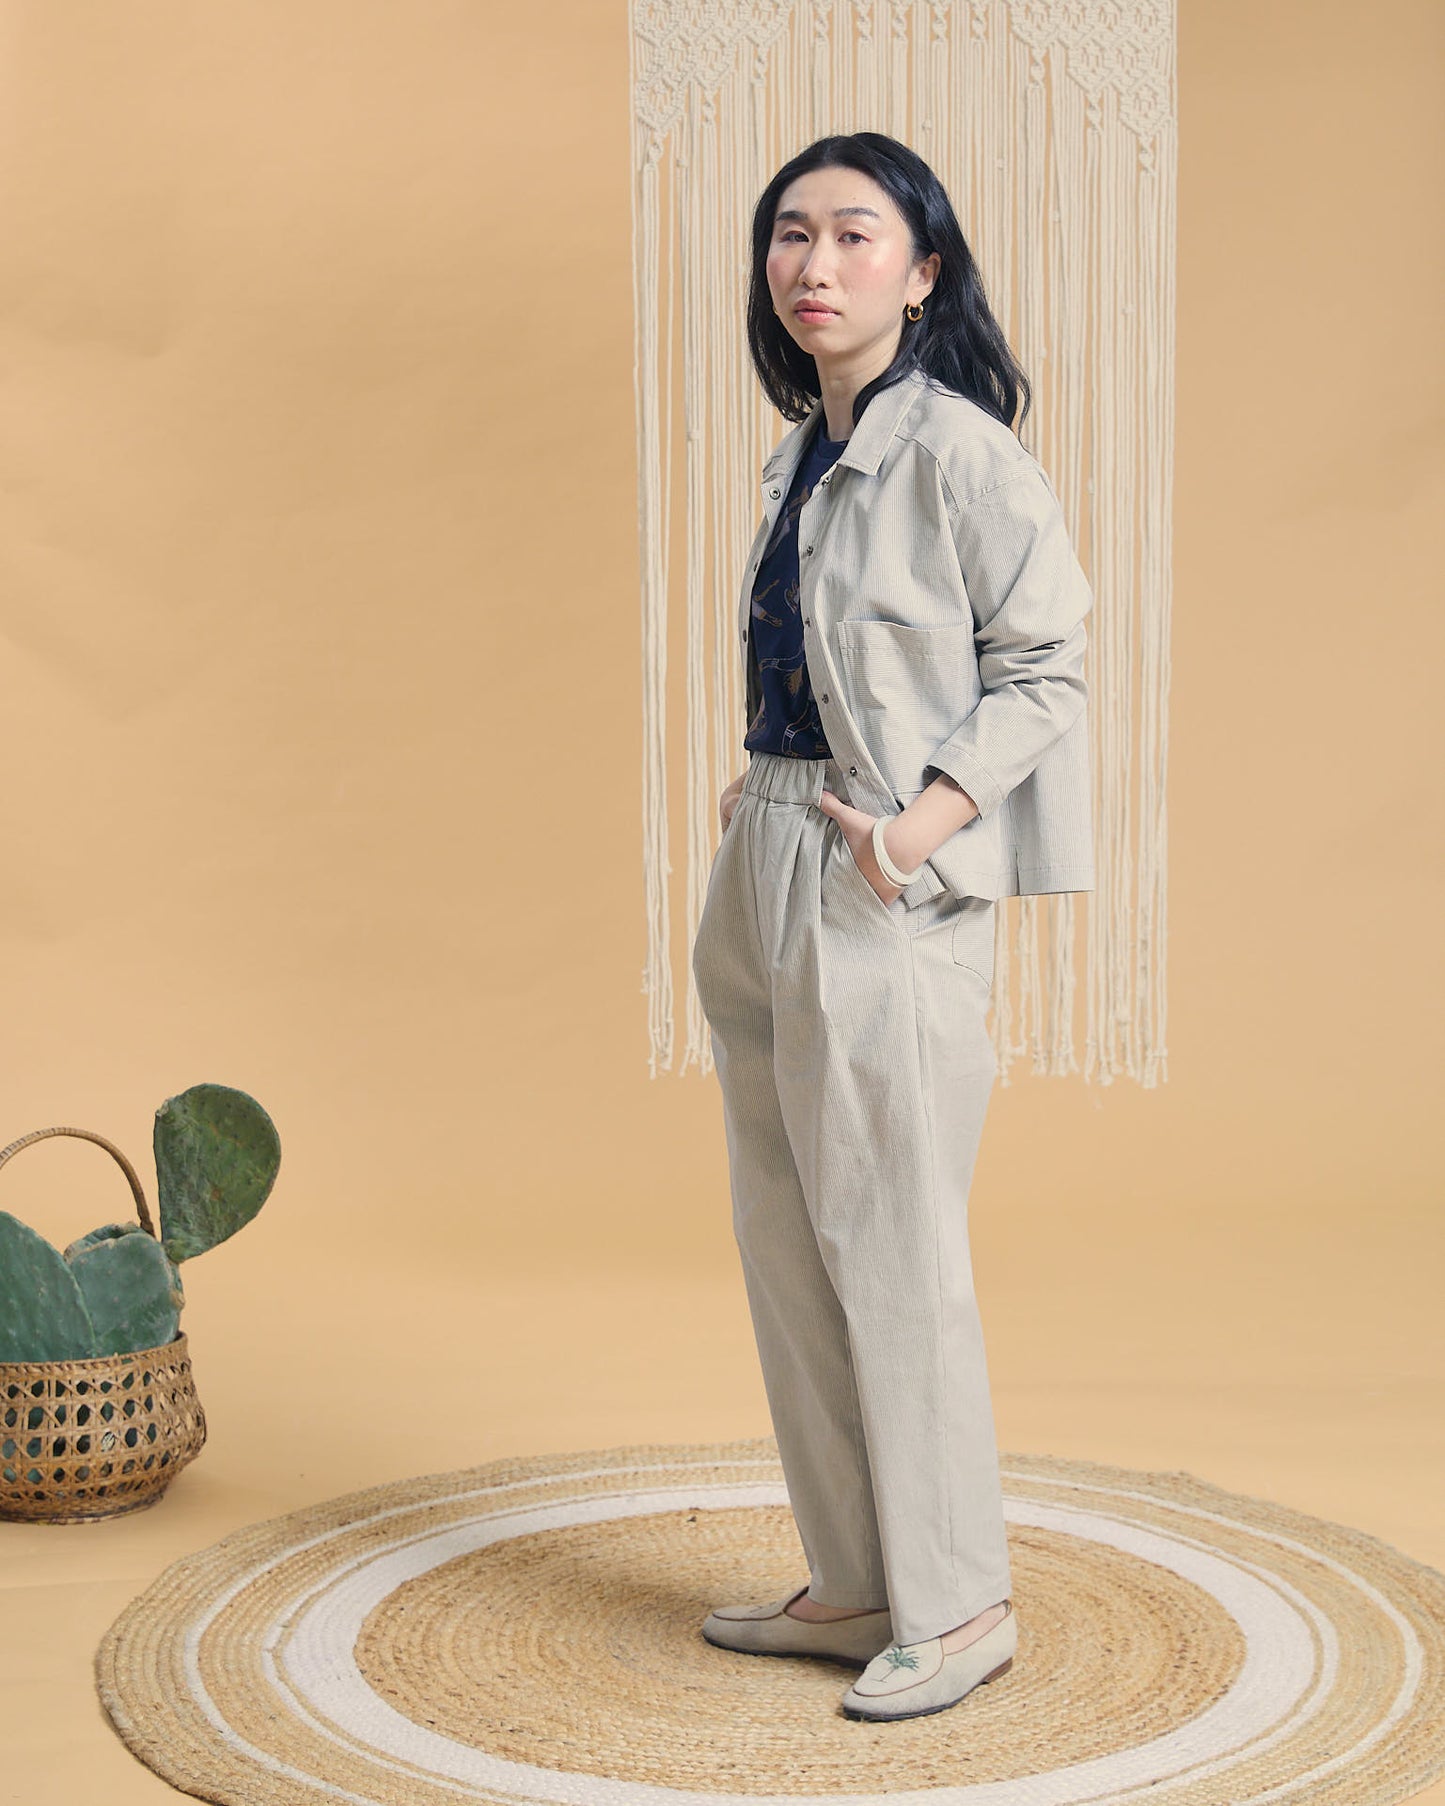 Pantalone Chino in cotone chiaro fantasia millerighe